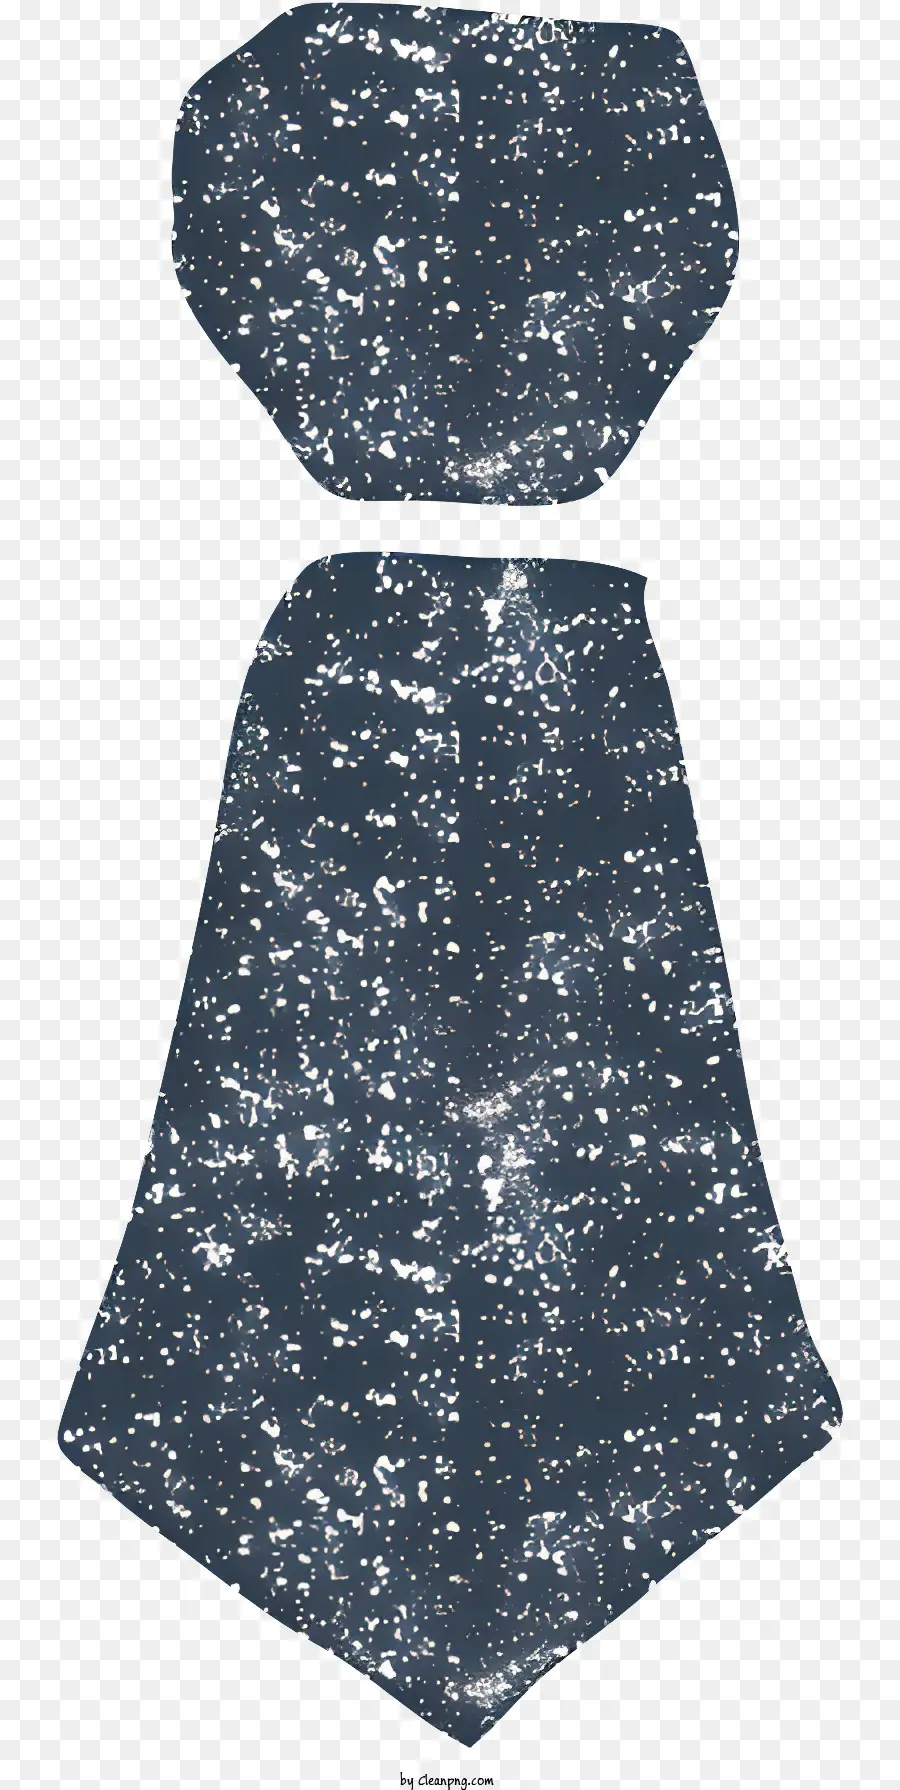 Biểu tượng Mẫu hình học Tablecloth màu xanh hải quân màu trắng và thiết kế khăn trải bàn màu đen - Khăn trải bàn màu xanh hải quân với các chấm trắng và đen